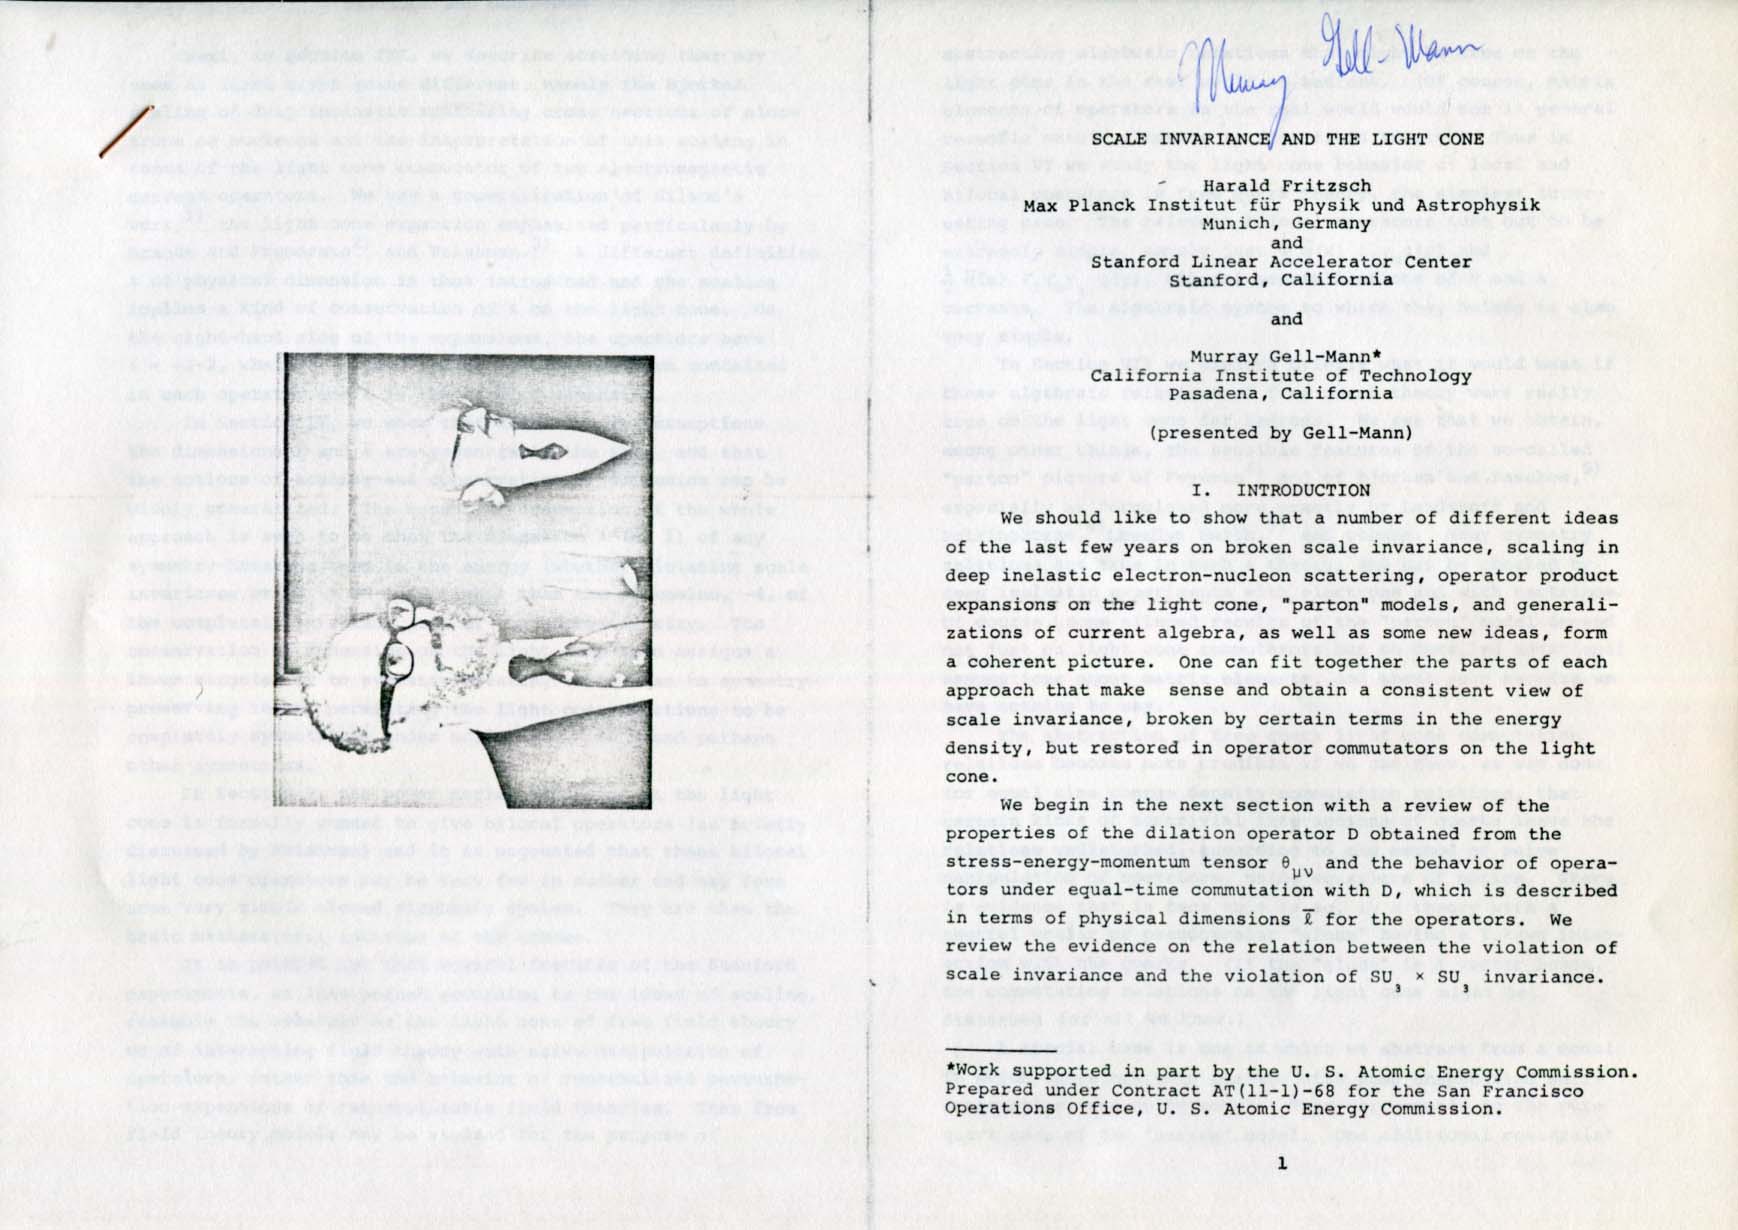 Murray Gell-Mann Autograph Autogramm | ID 8141376979093